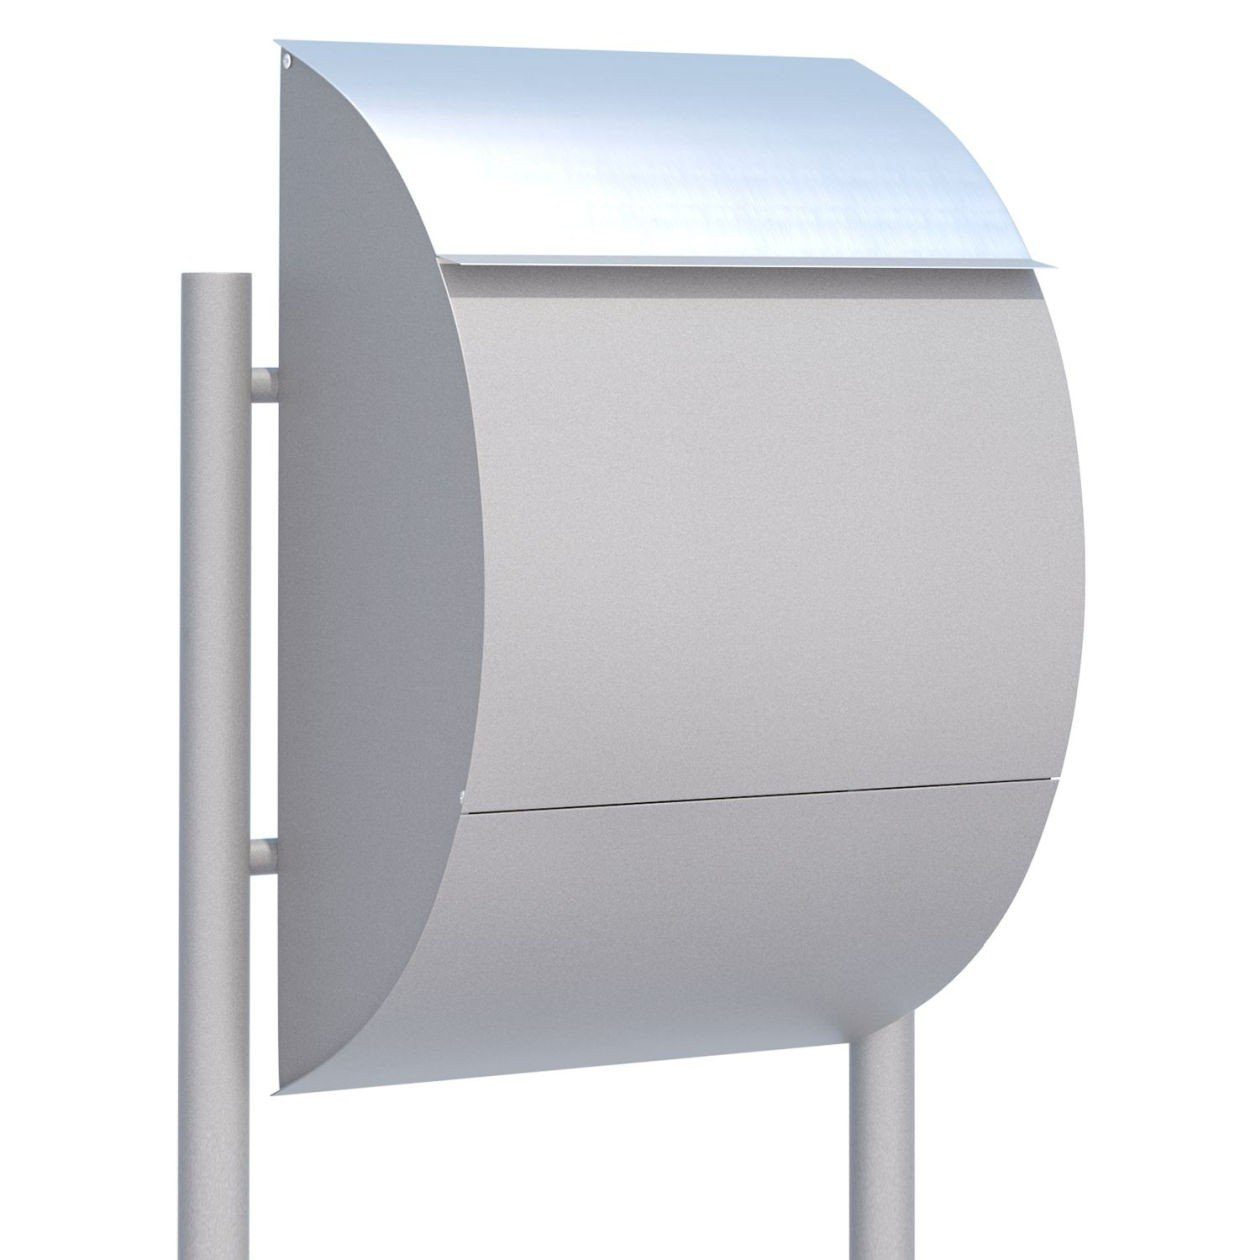 Bravios Briefkasten Standbriefkasten Jumbo Grau Metallic mit Edelstah